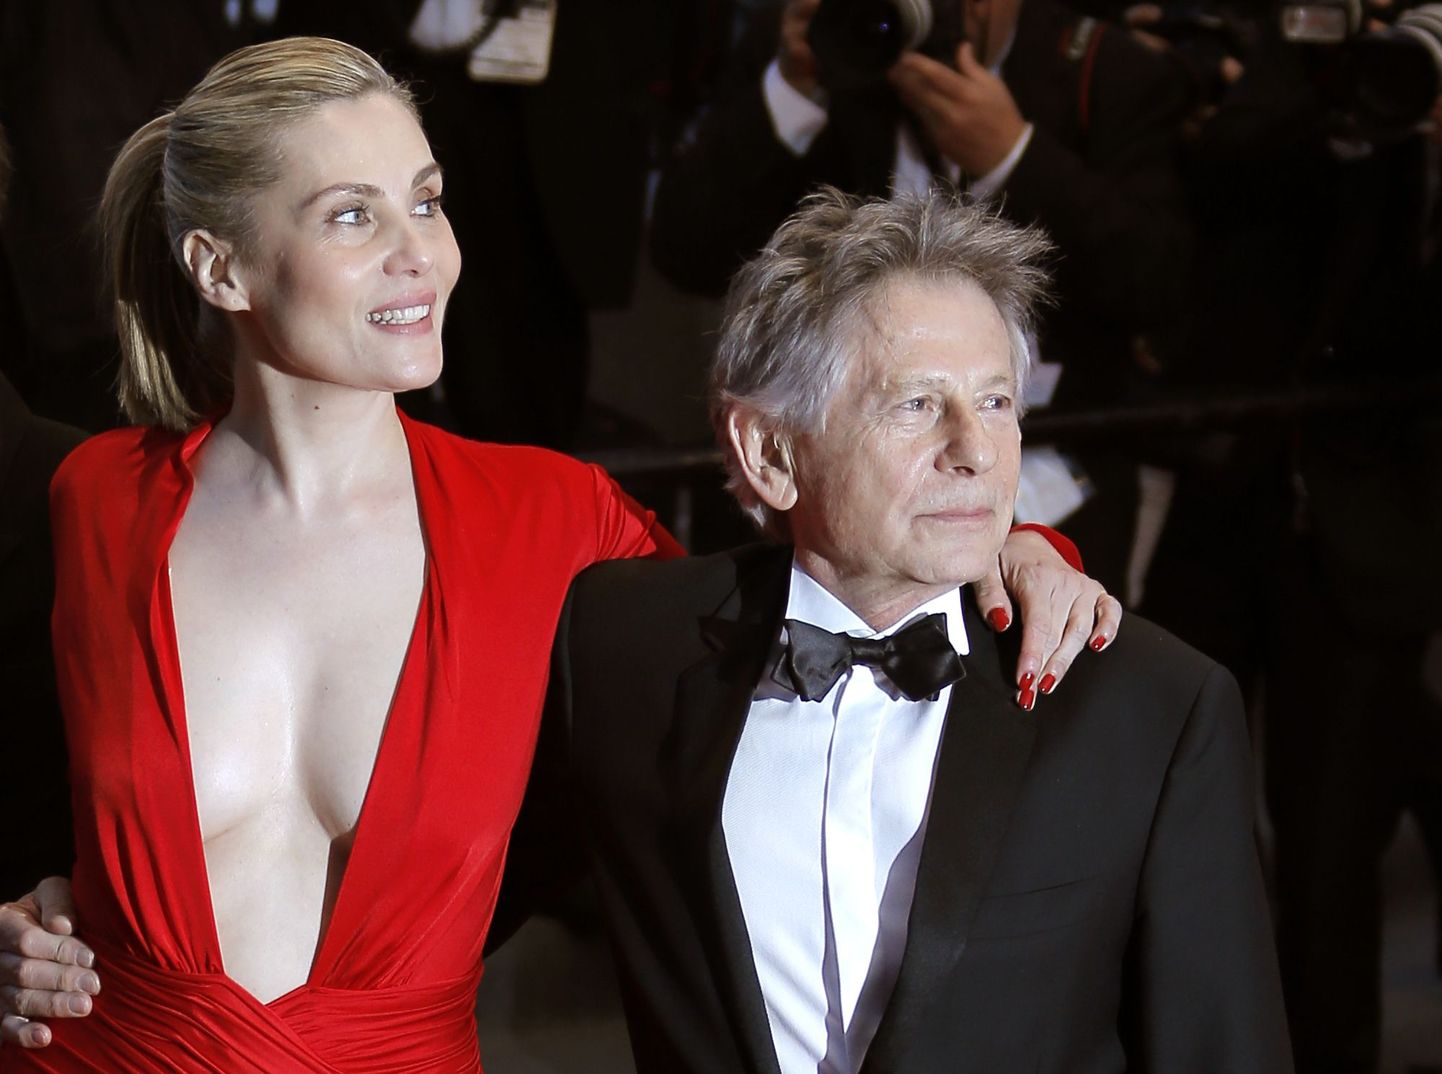 Romas Polanski ja näitlejanna Emmanuelle Seigner möödunud aastal Cannes'i filmifestivalil.